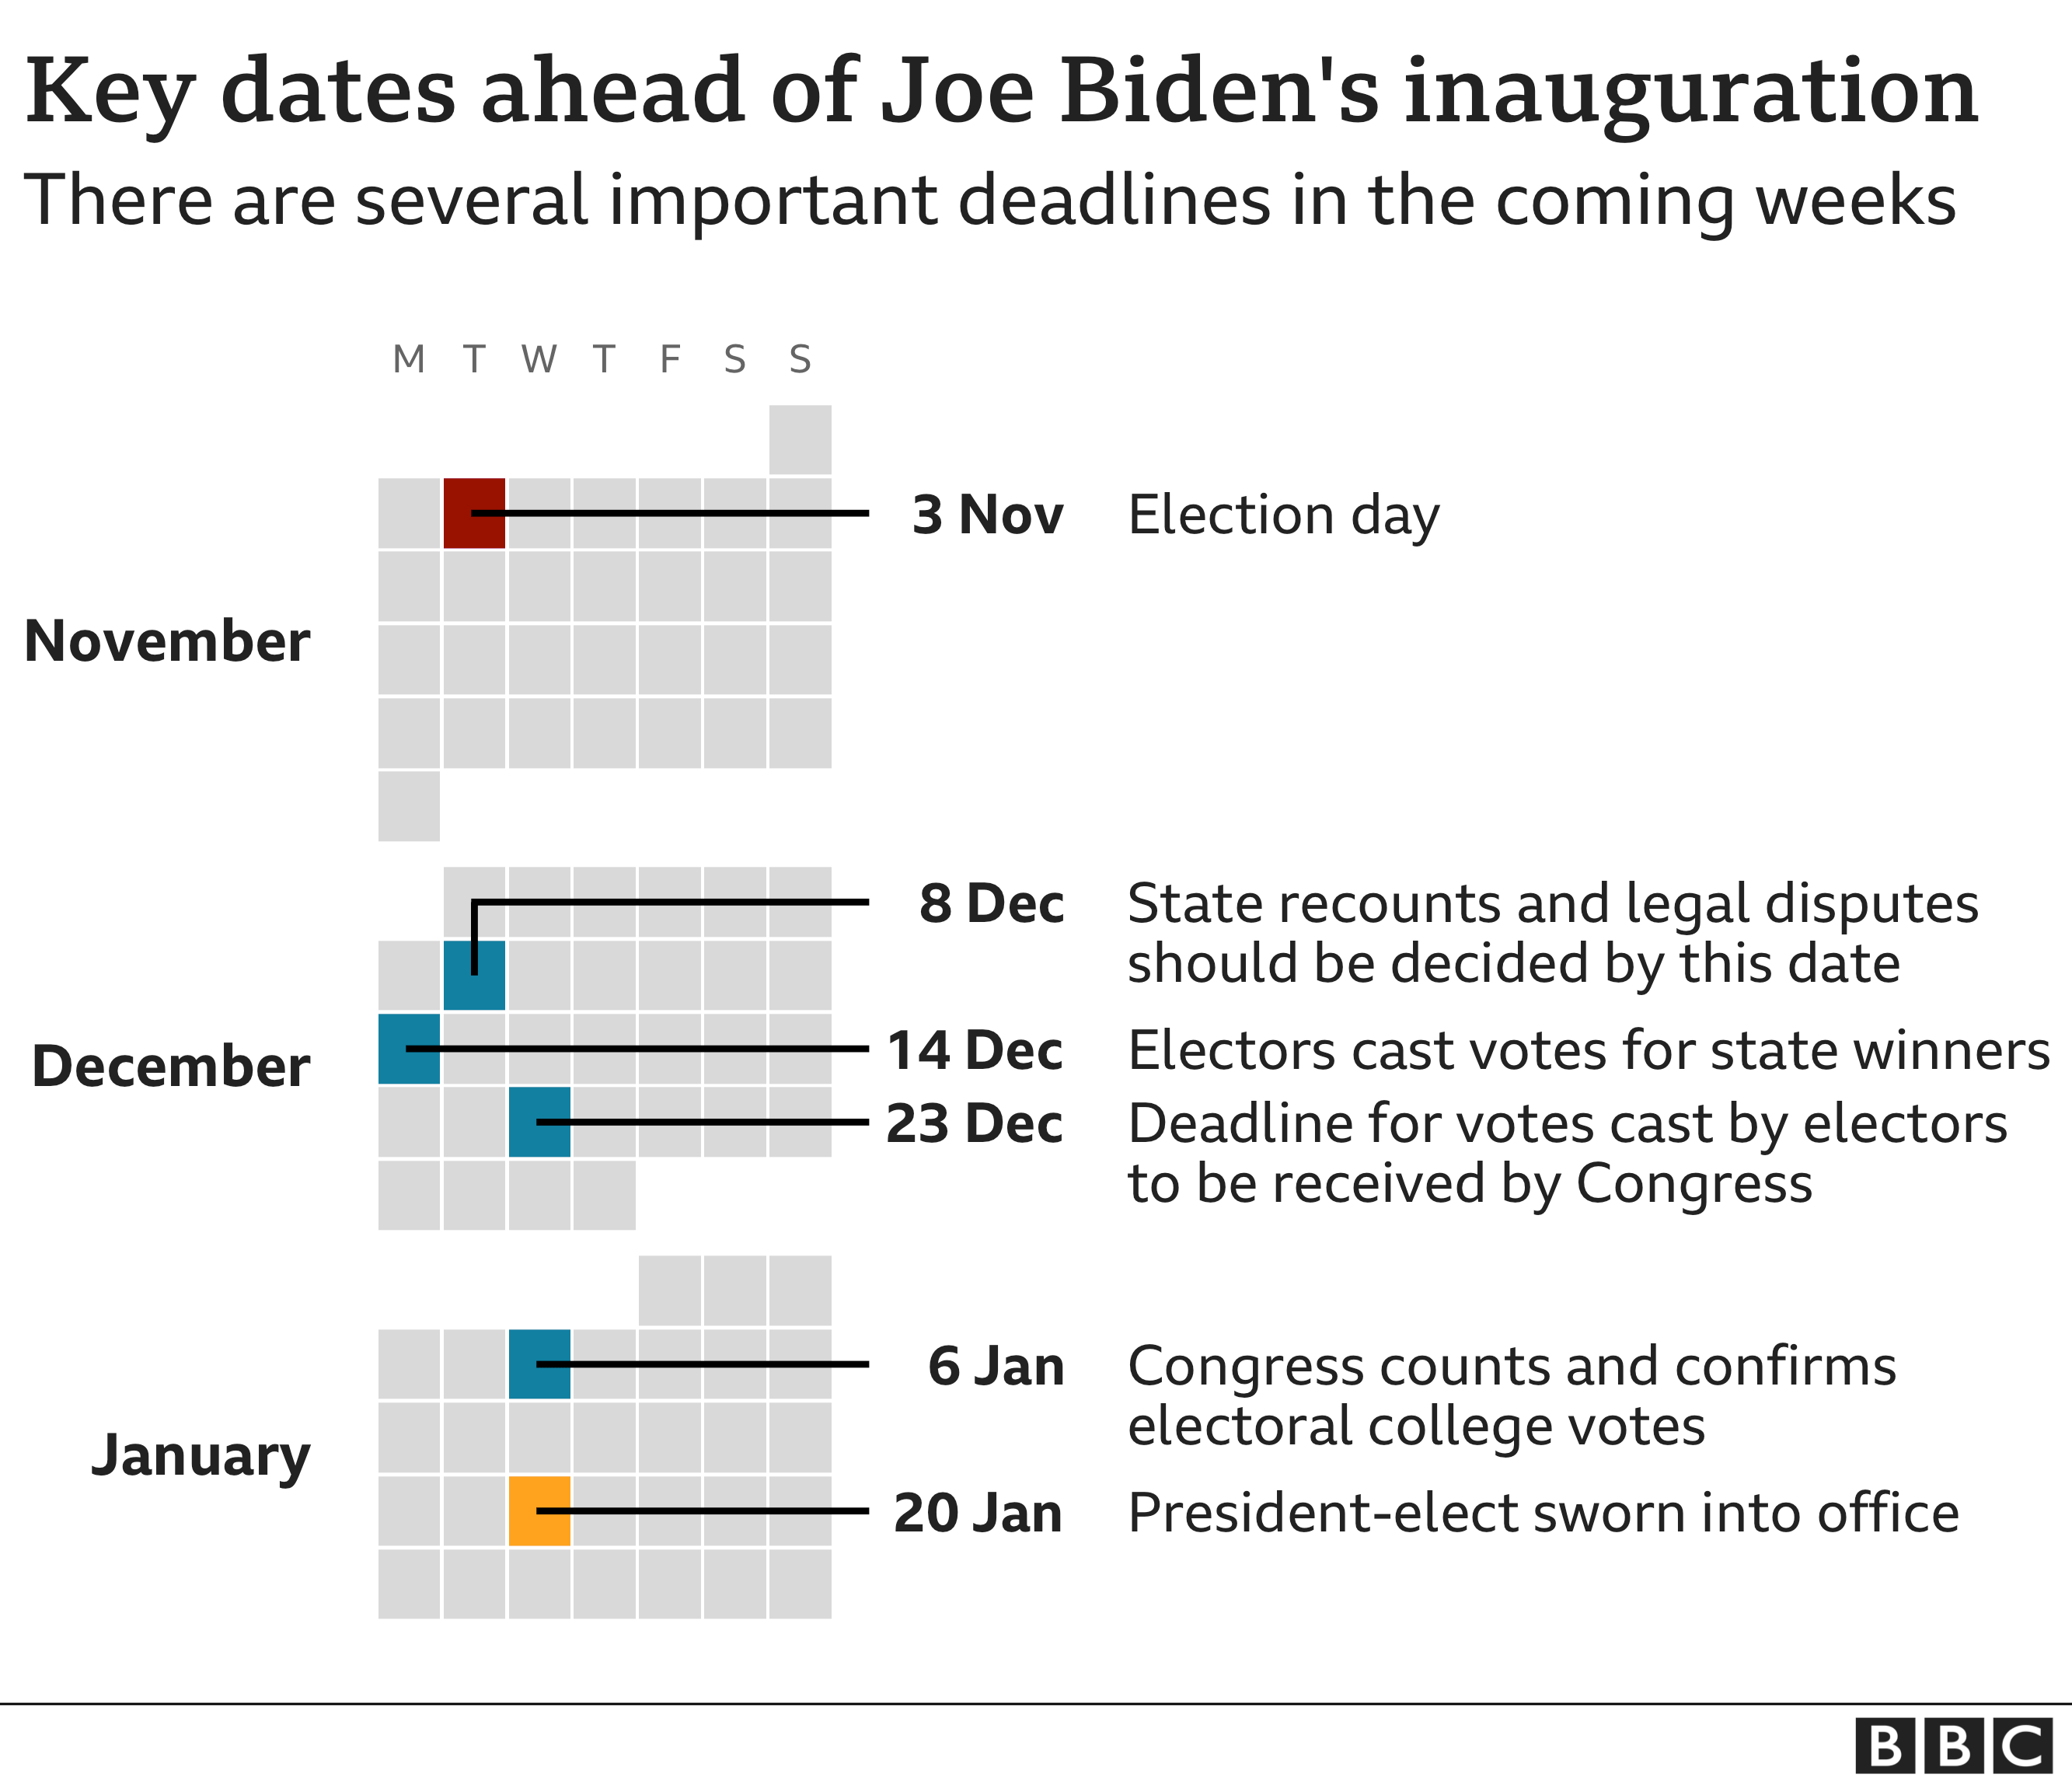 belangrijke data voor de inauguratie van Joe Biden